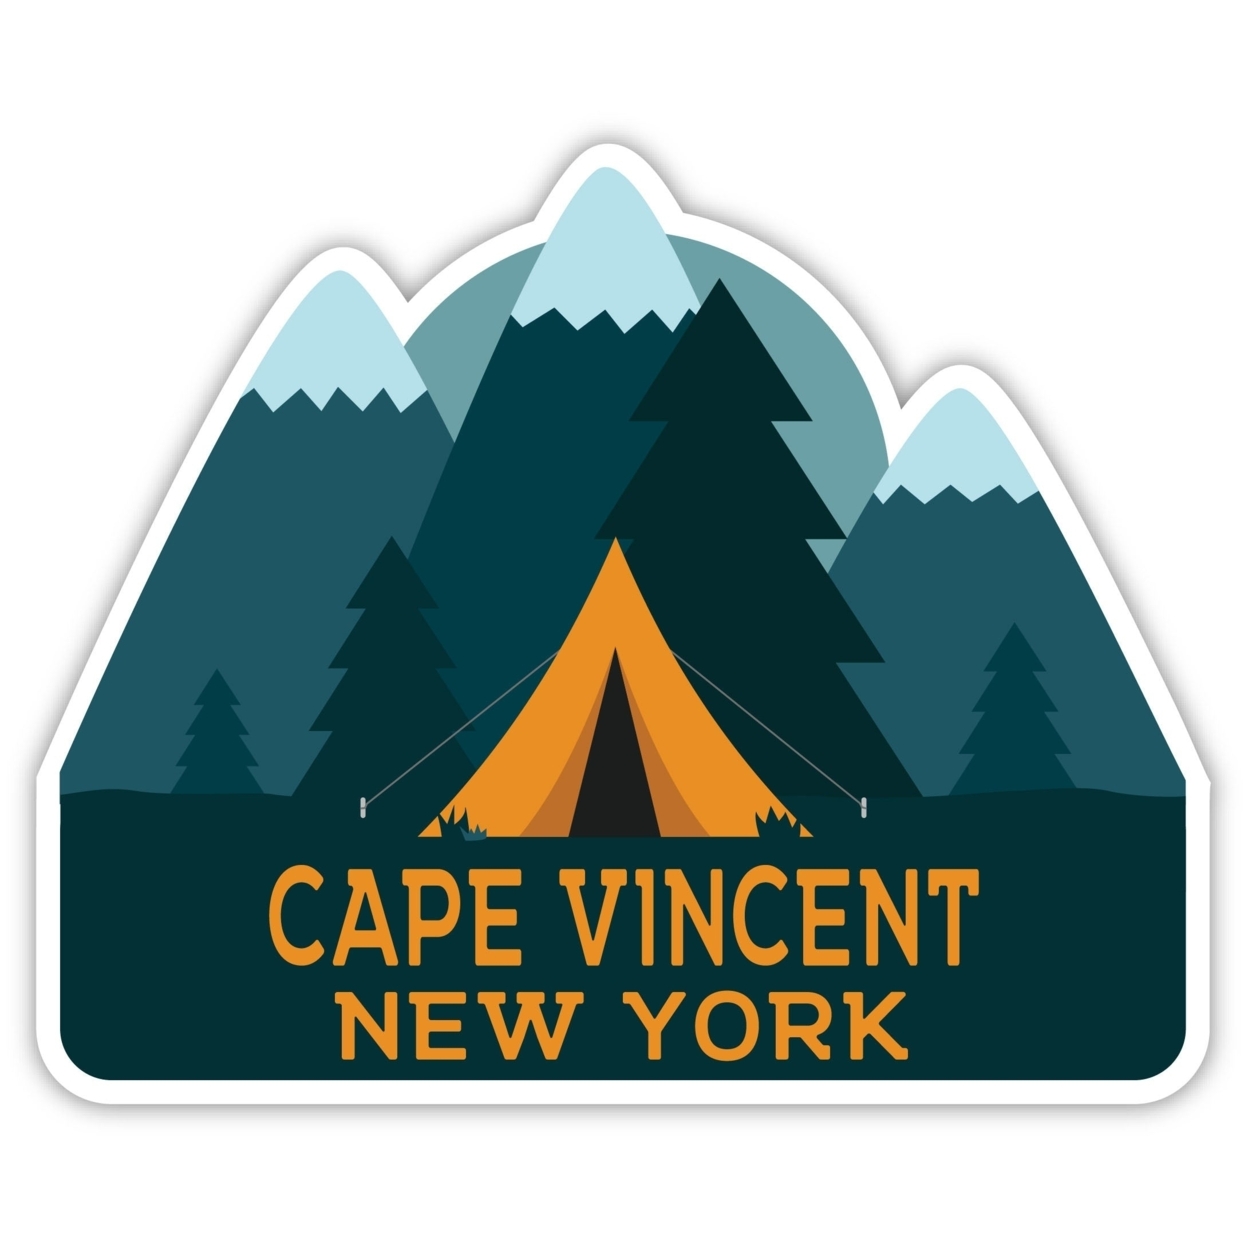 Cape Vincent New York Souvenir Decorative Stickers (Choose Theme And Size) - Single Unit, 10-Inch, Tent